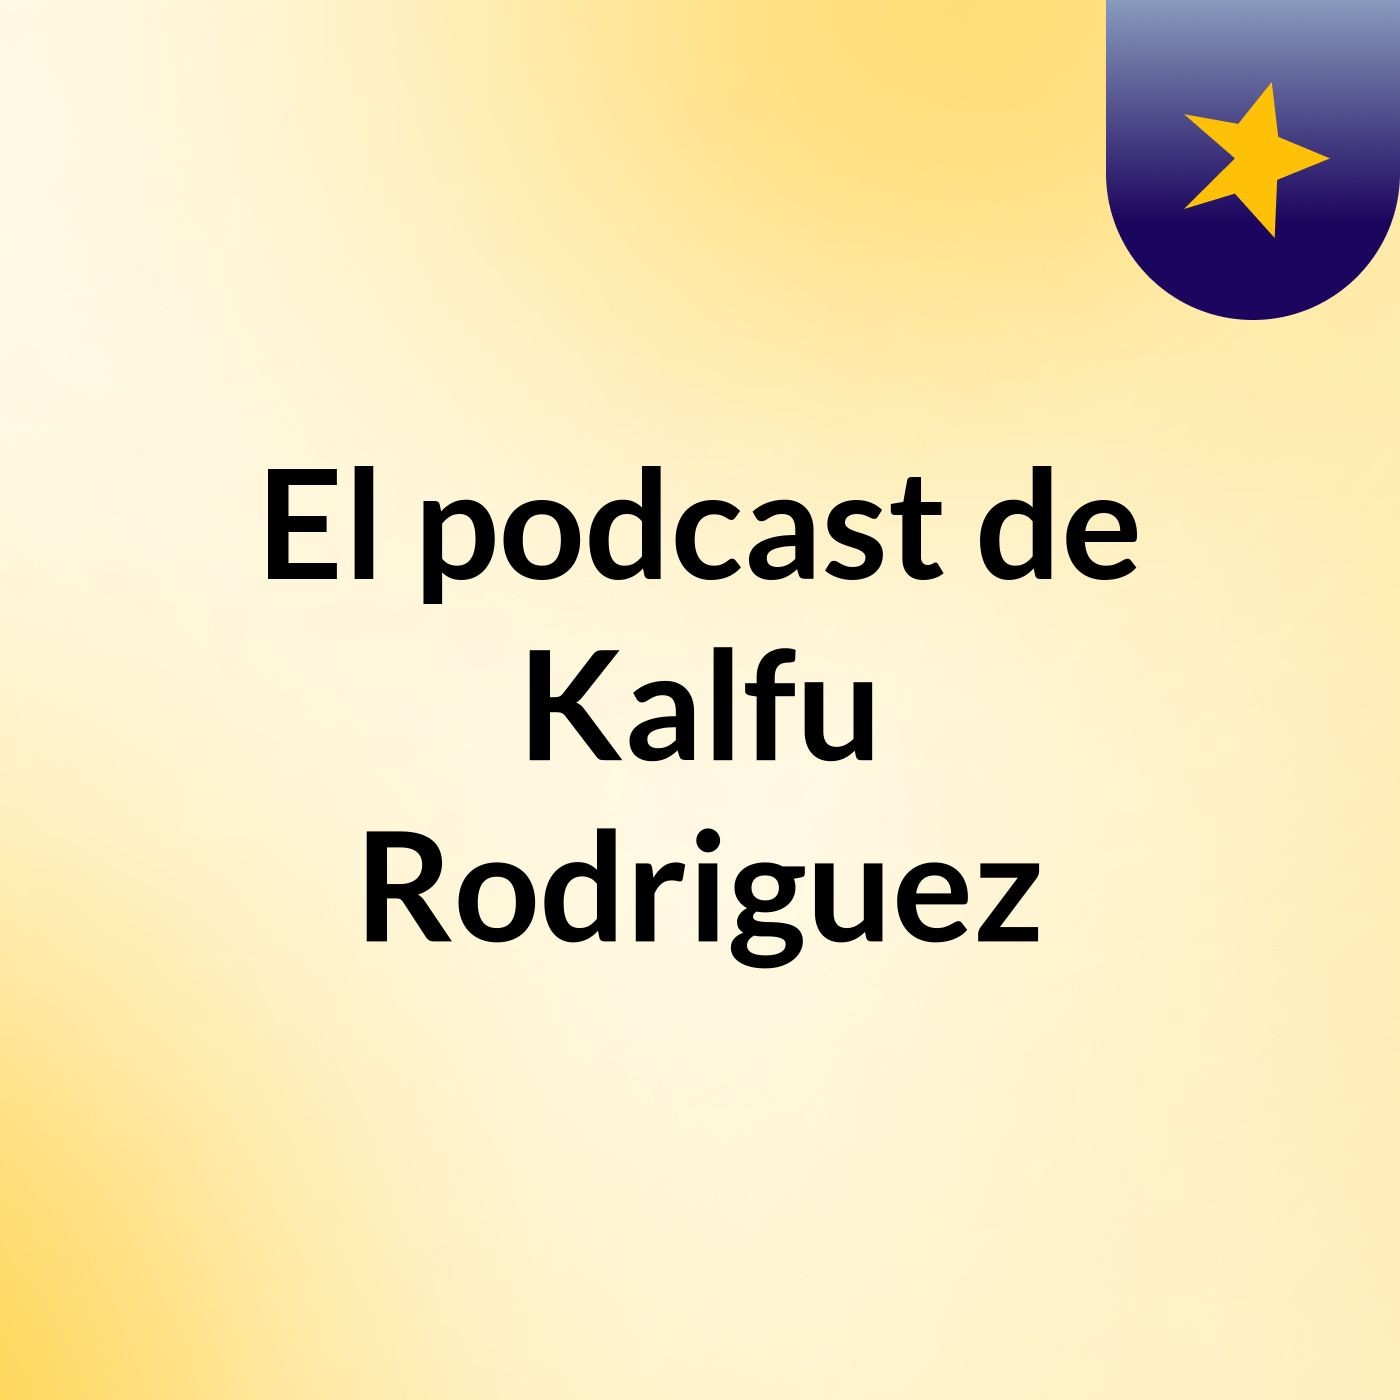 El podcast de Kalfu Rodriguez